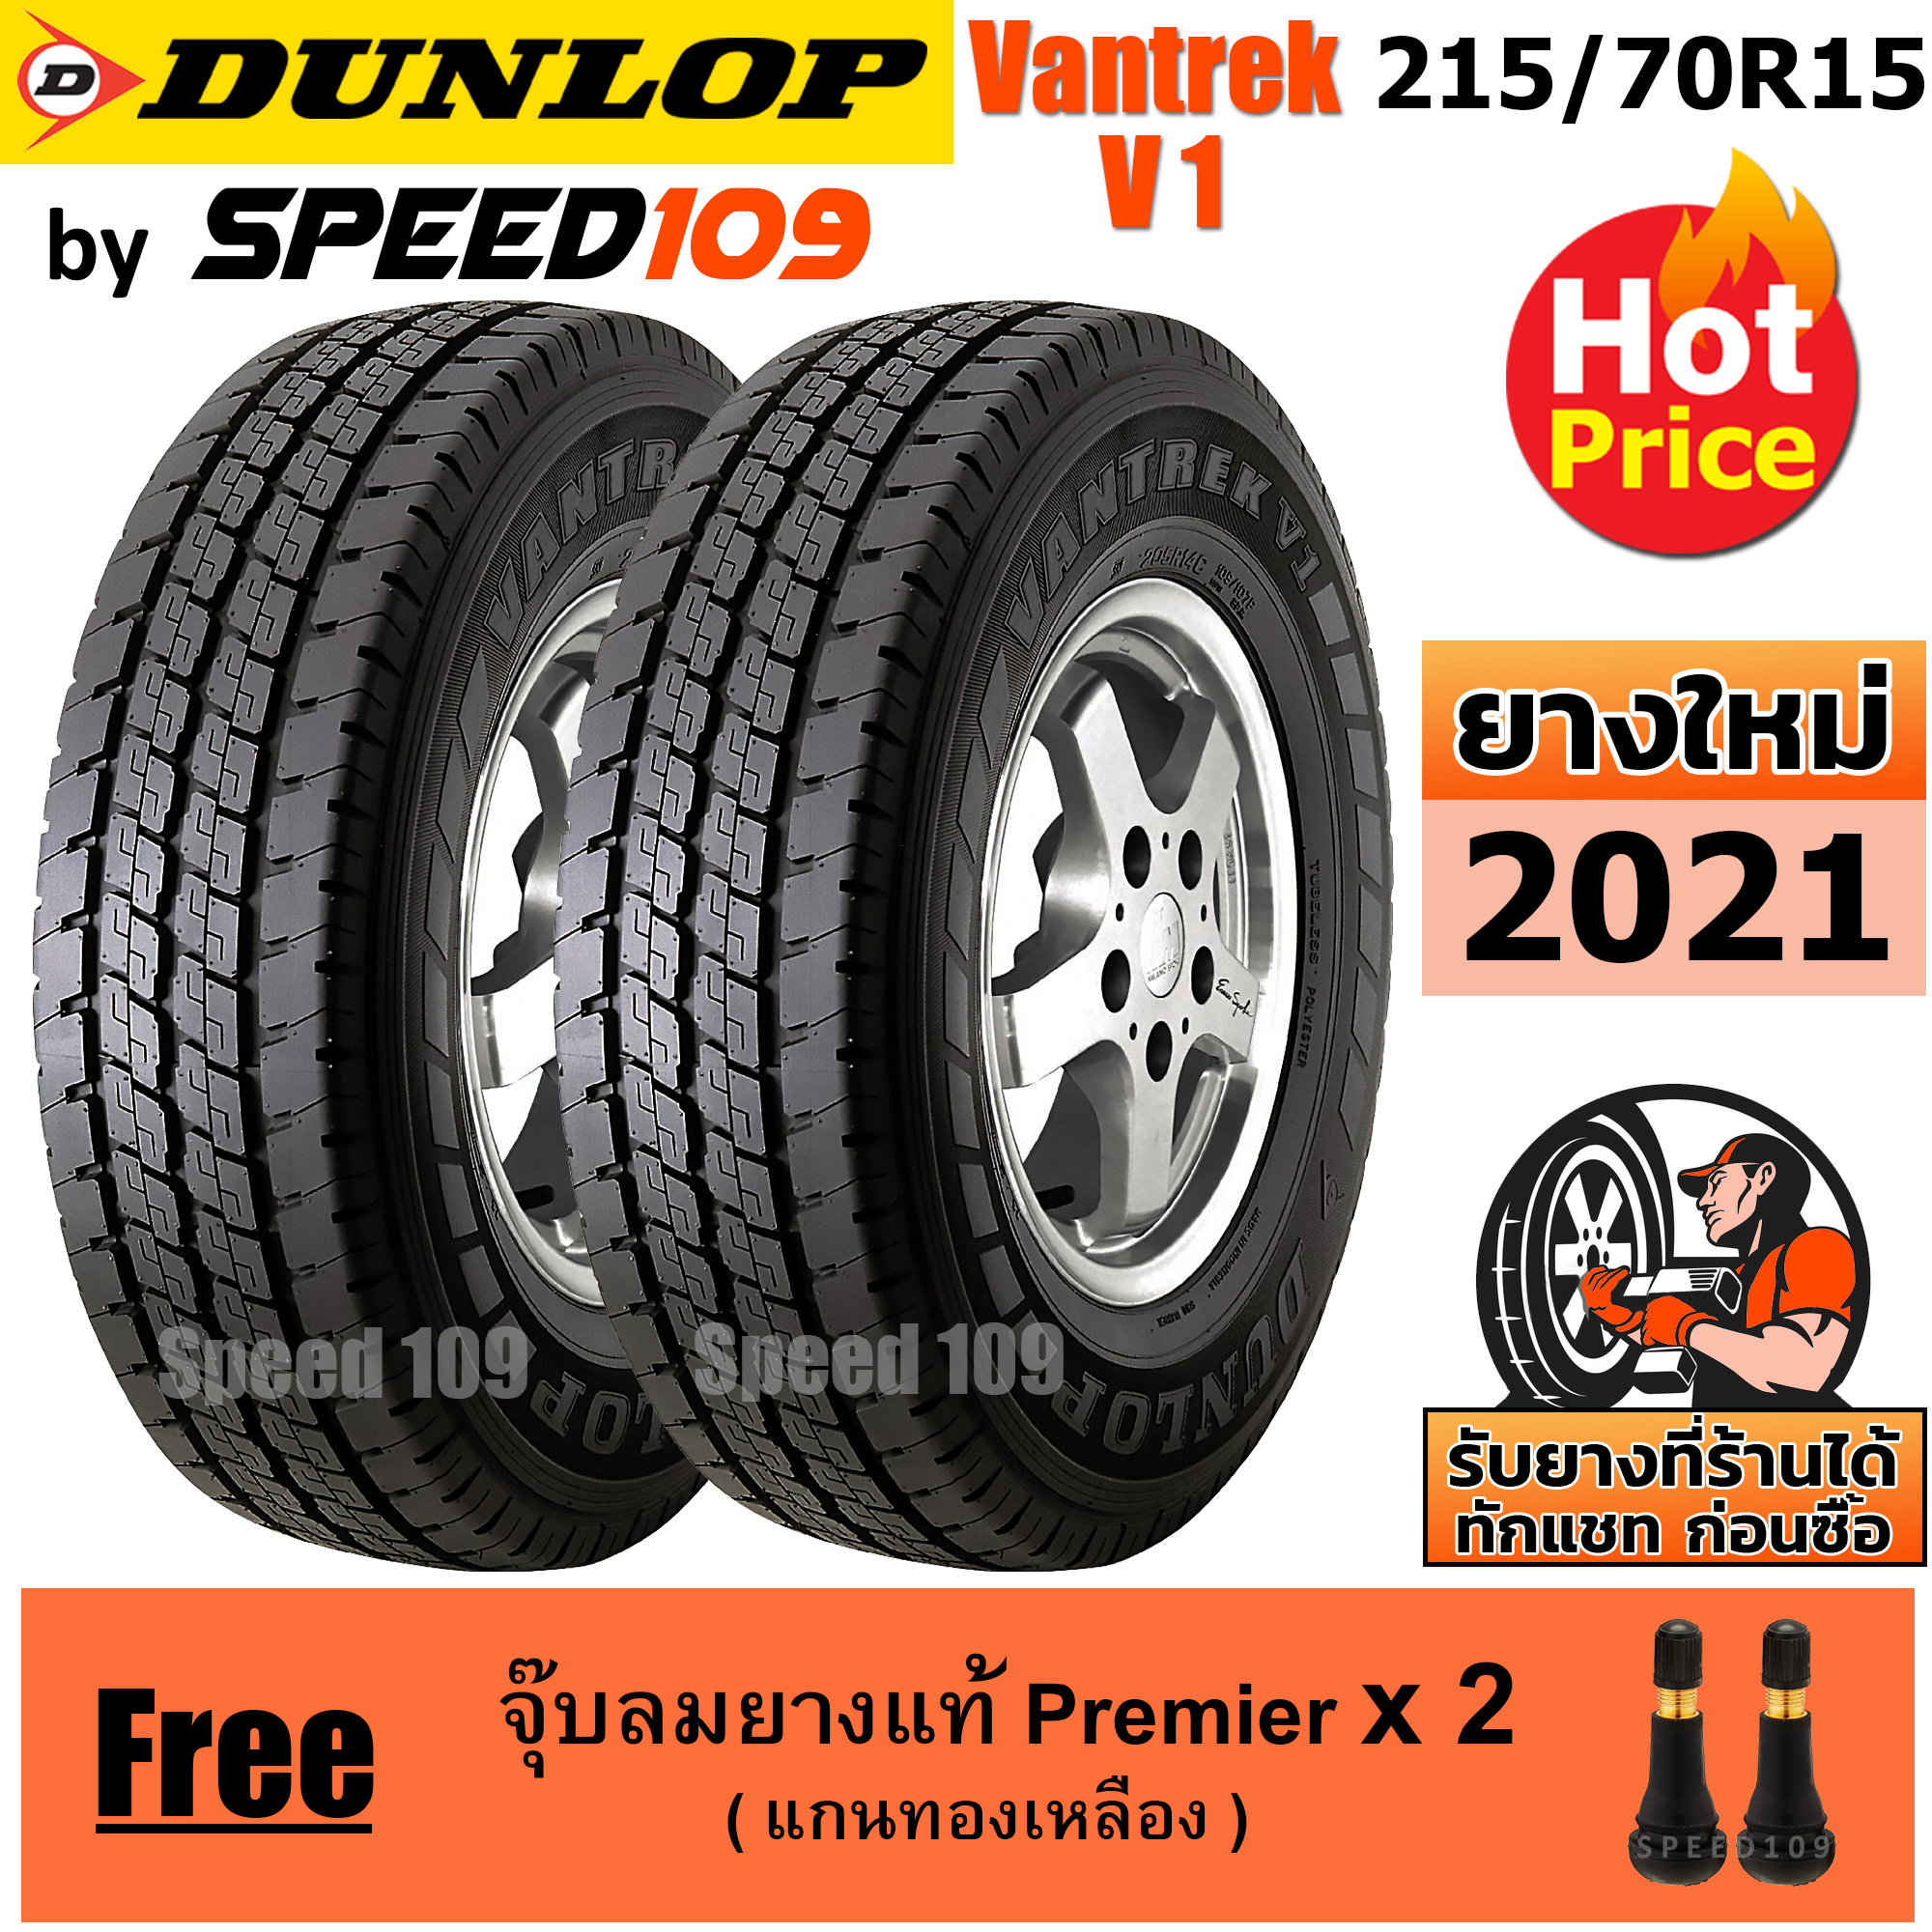 DUNLOP ยางรถยนต์ ขอบ 15 ขนาด 215/70R15 รุ่น Vantrek V1 - 2 เส้น (ปี 2021)